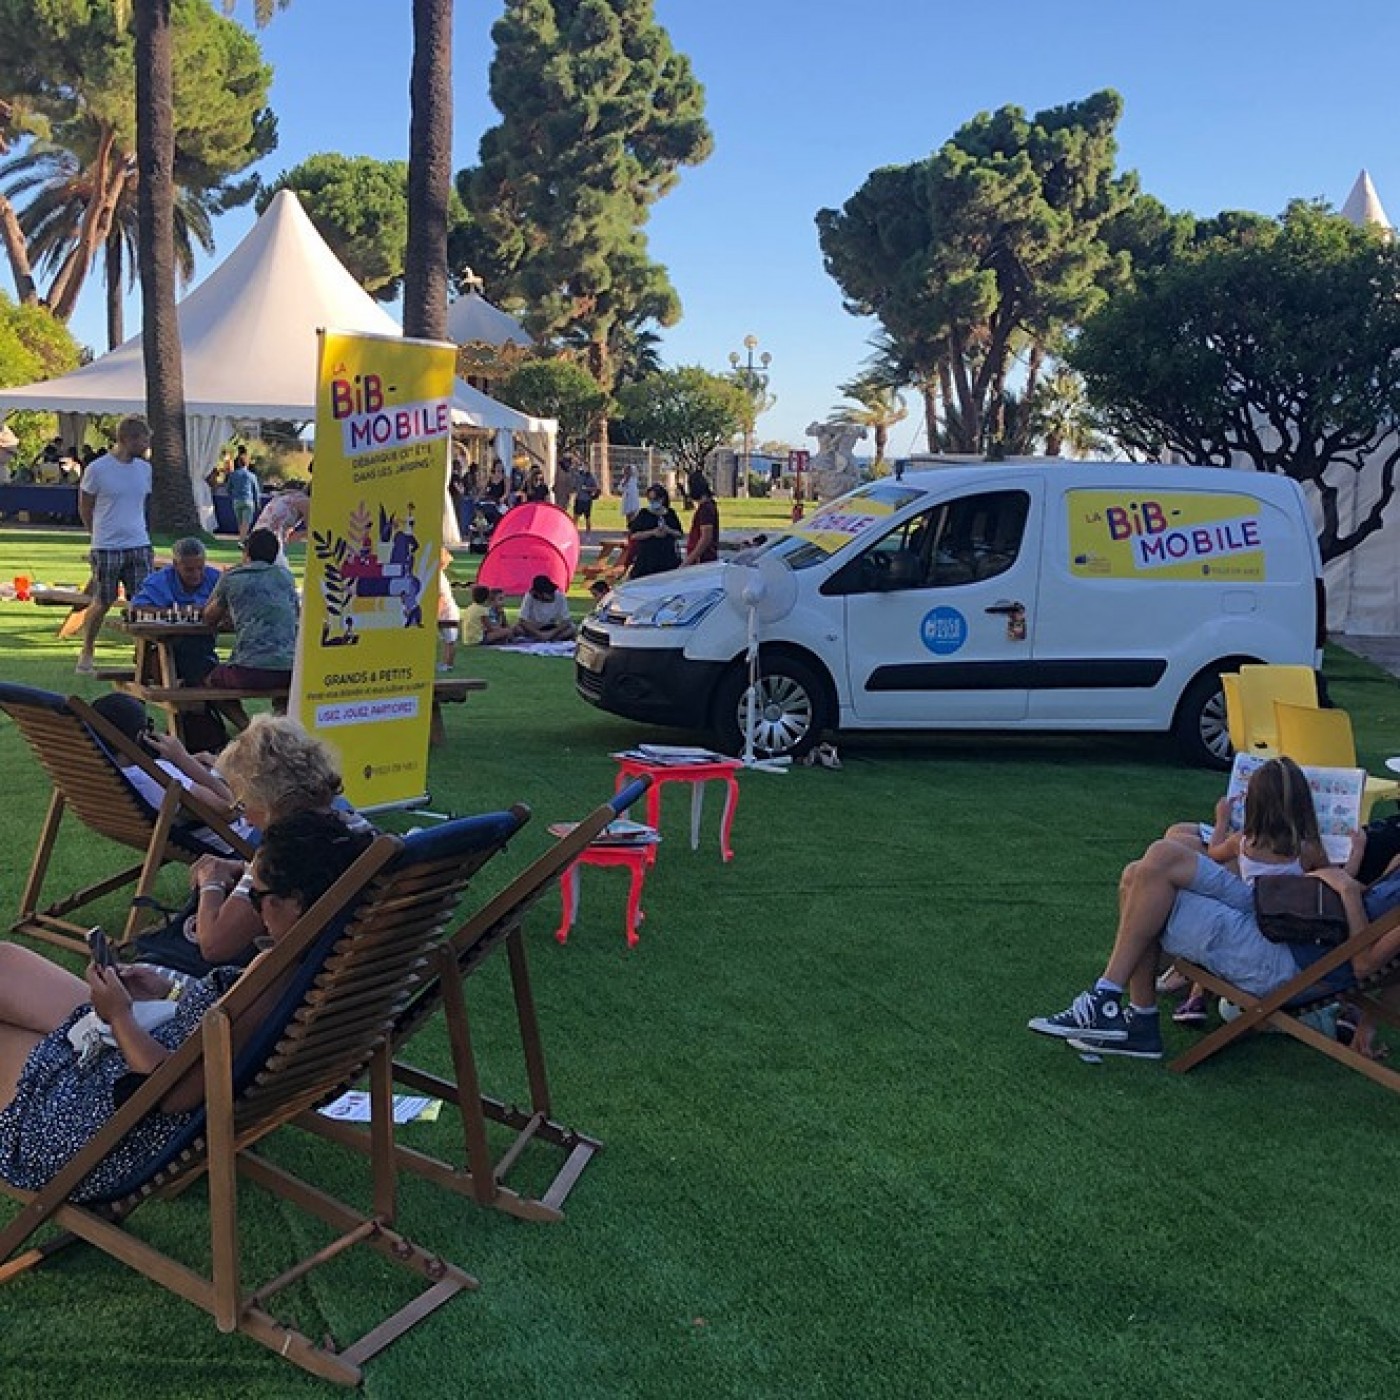 La Bib-Mobile débarque cet été dans les parcs et jardins de la Ville de Nice